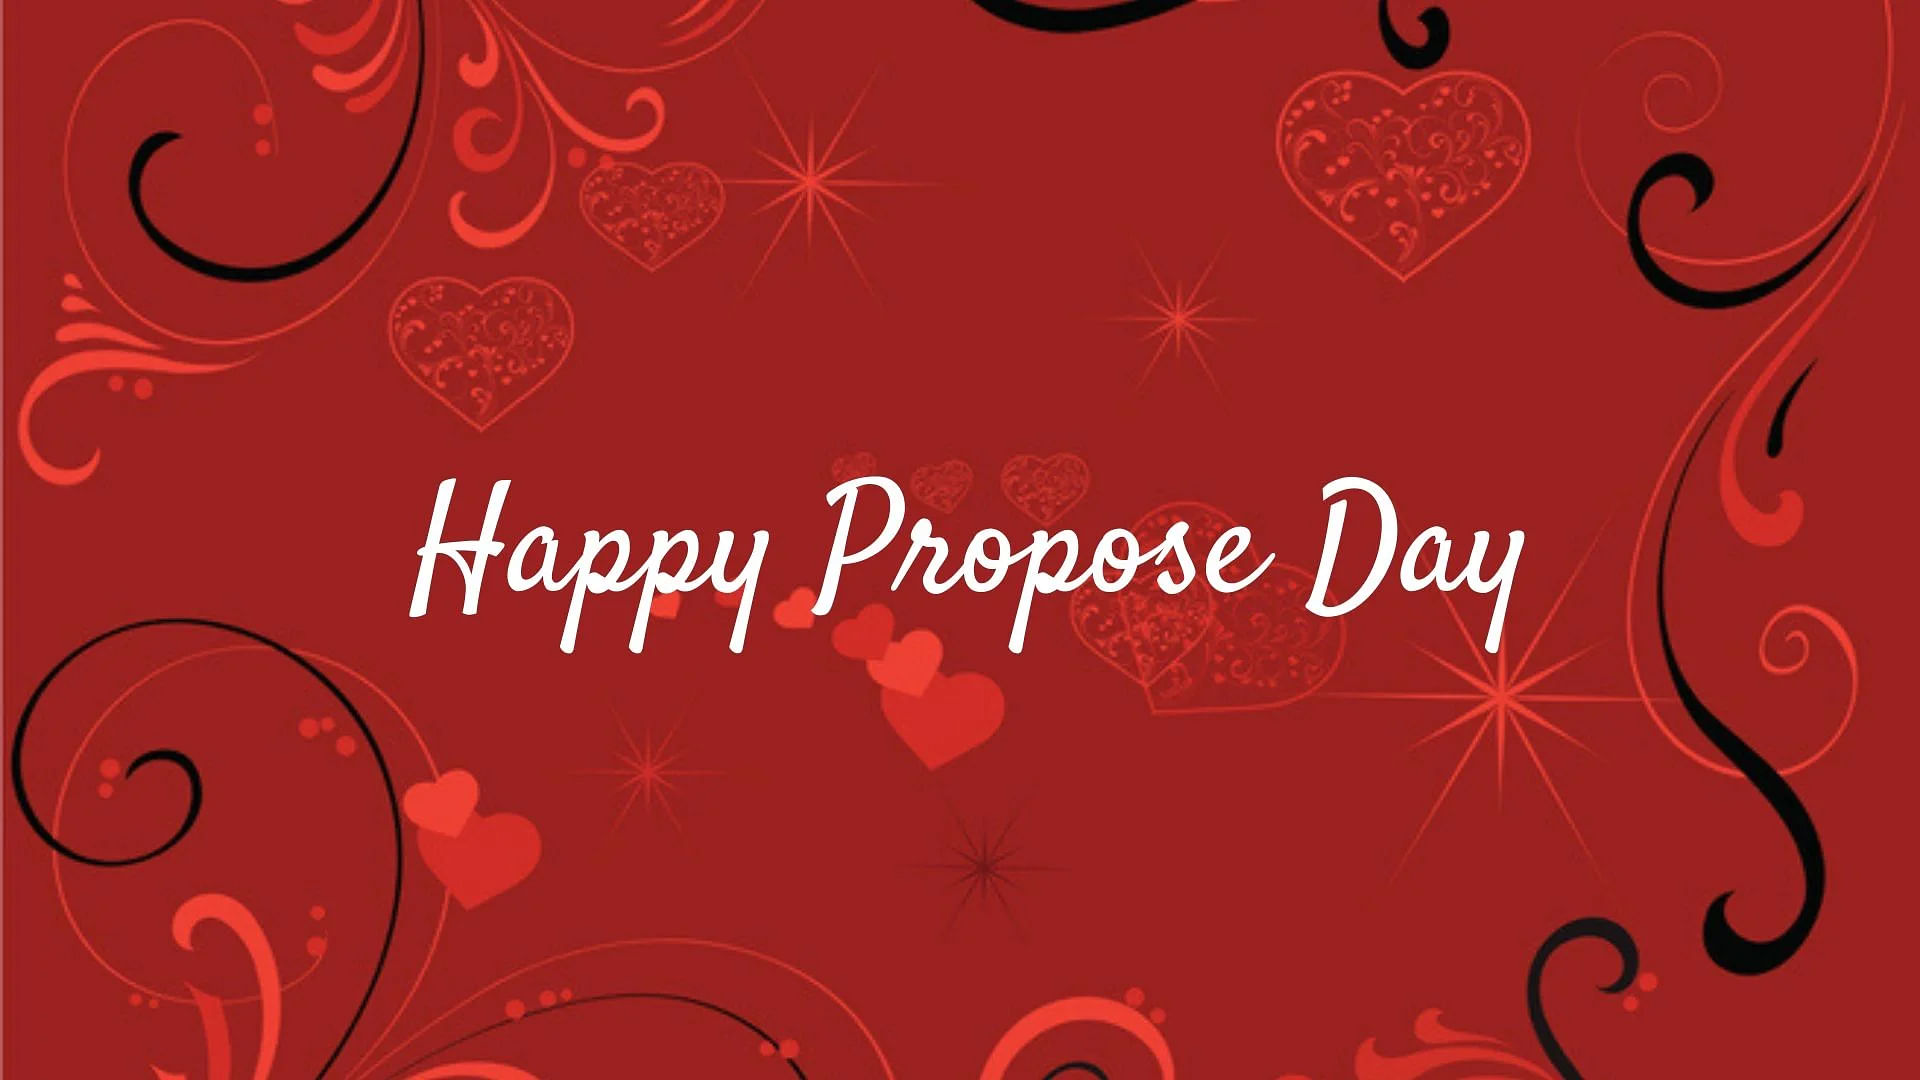 Propose day images - Valentine spl - Divi Editz